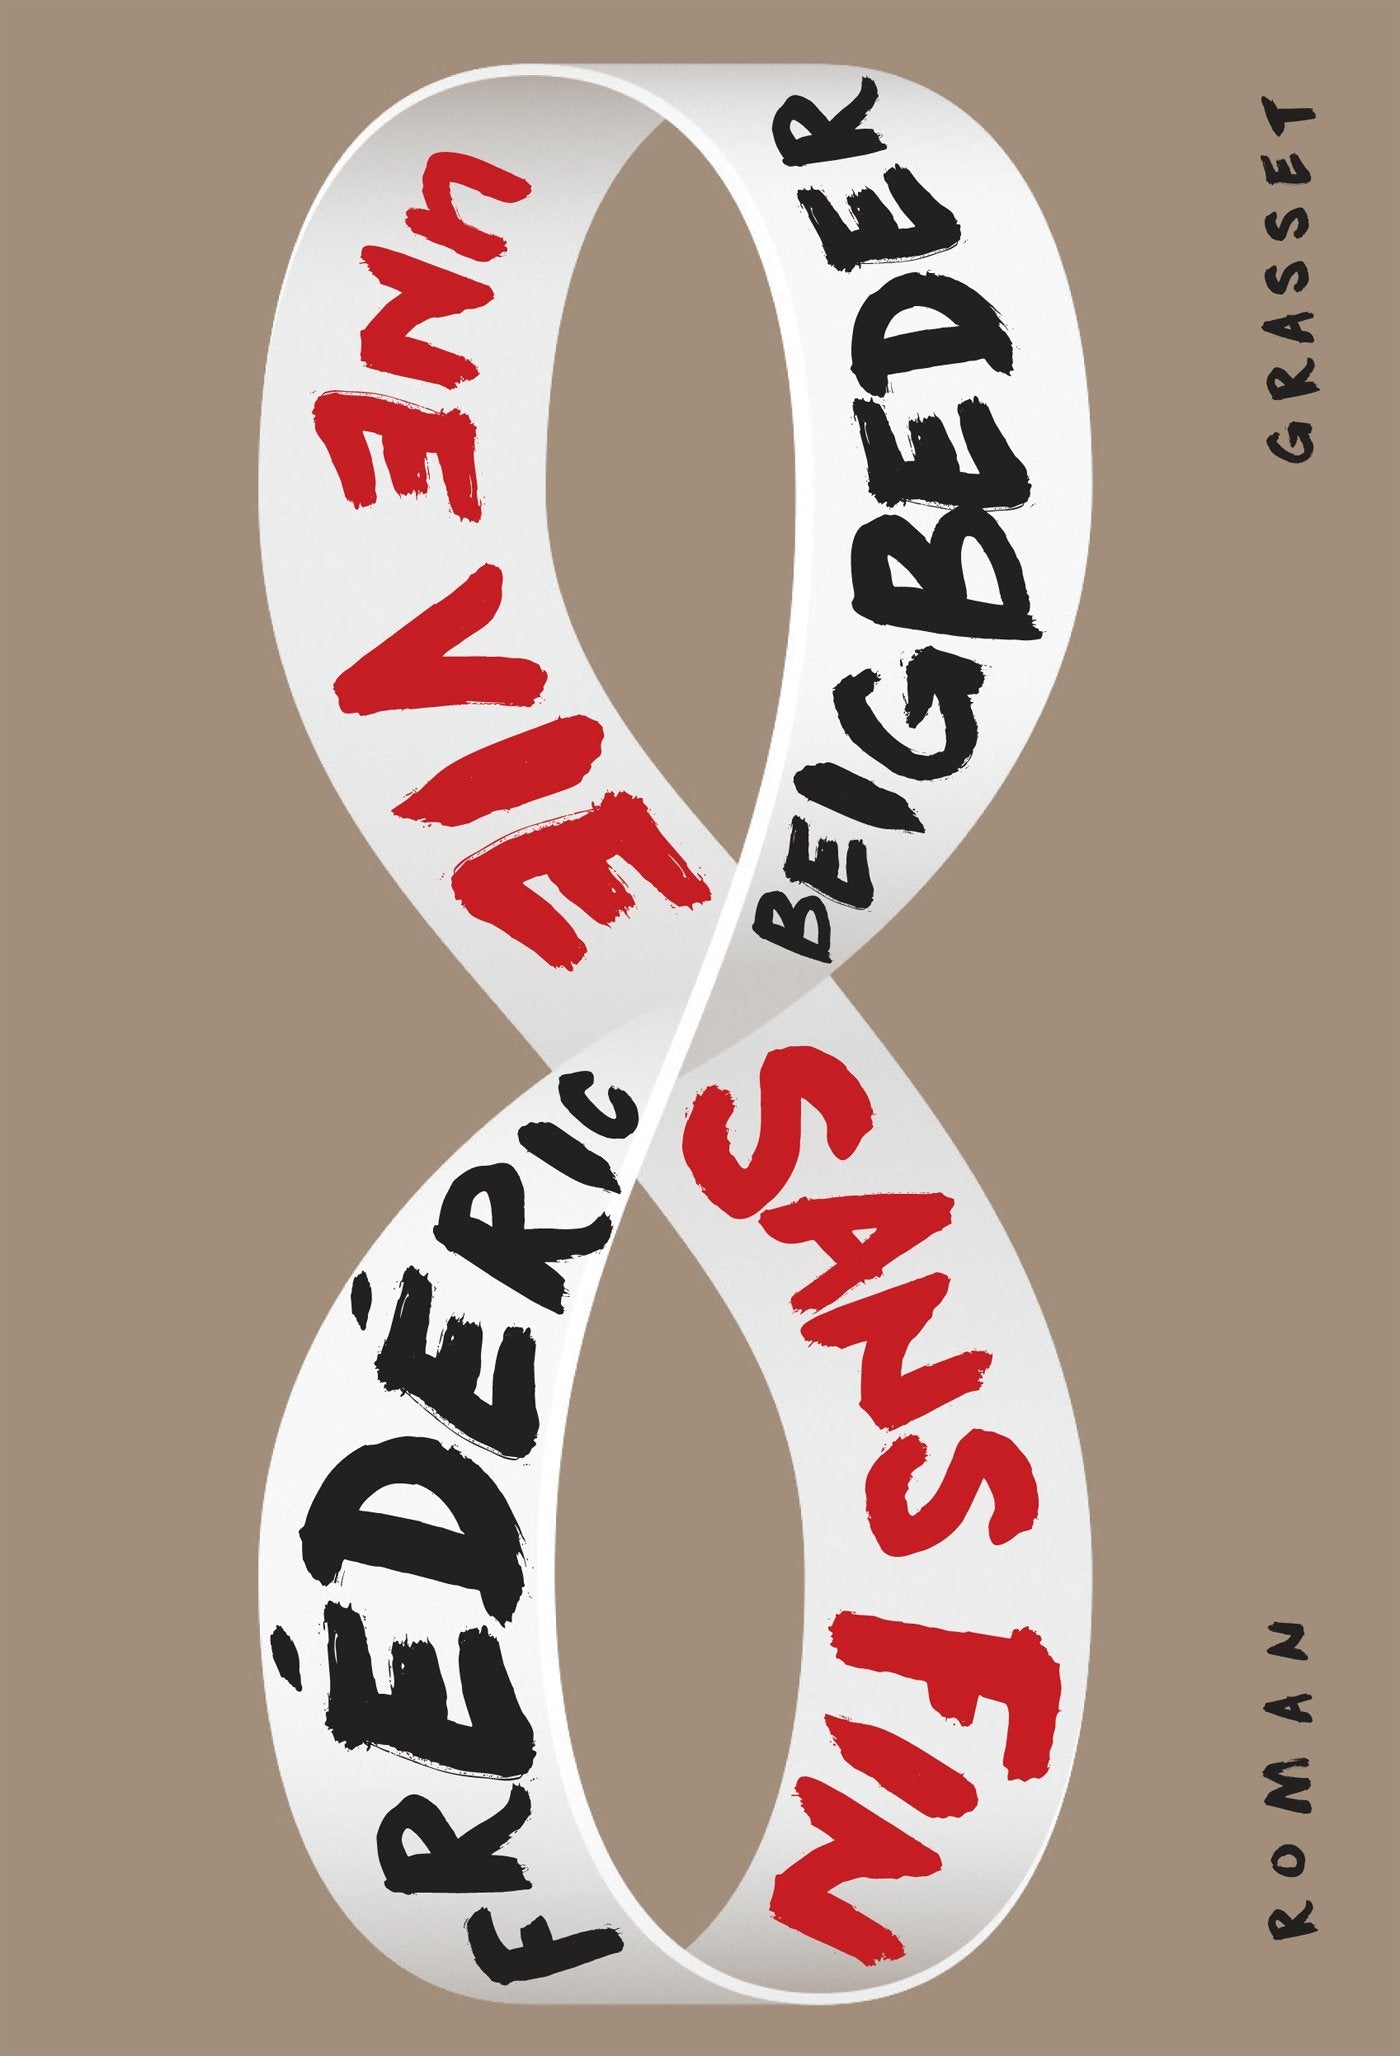 Livre ISBN 2246812615 Une vie sans fin (Frédéric Beigbeder,)